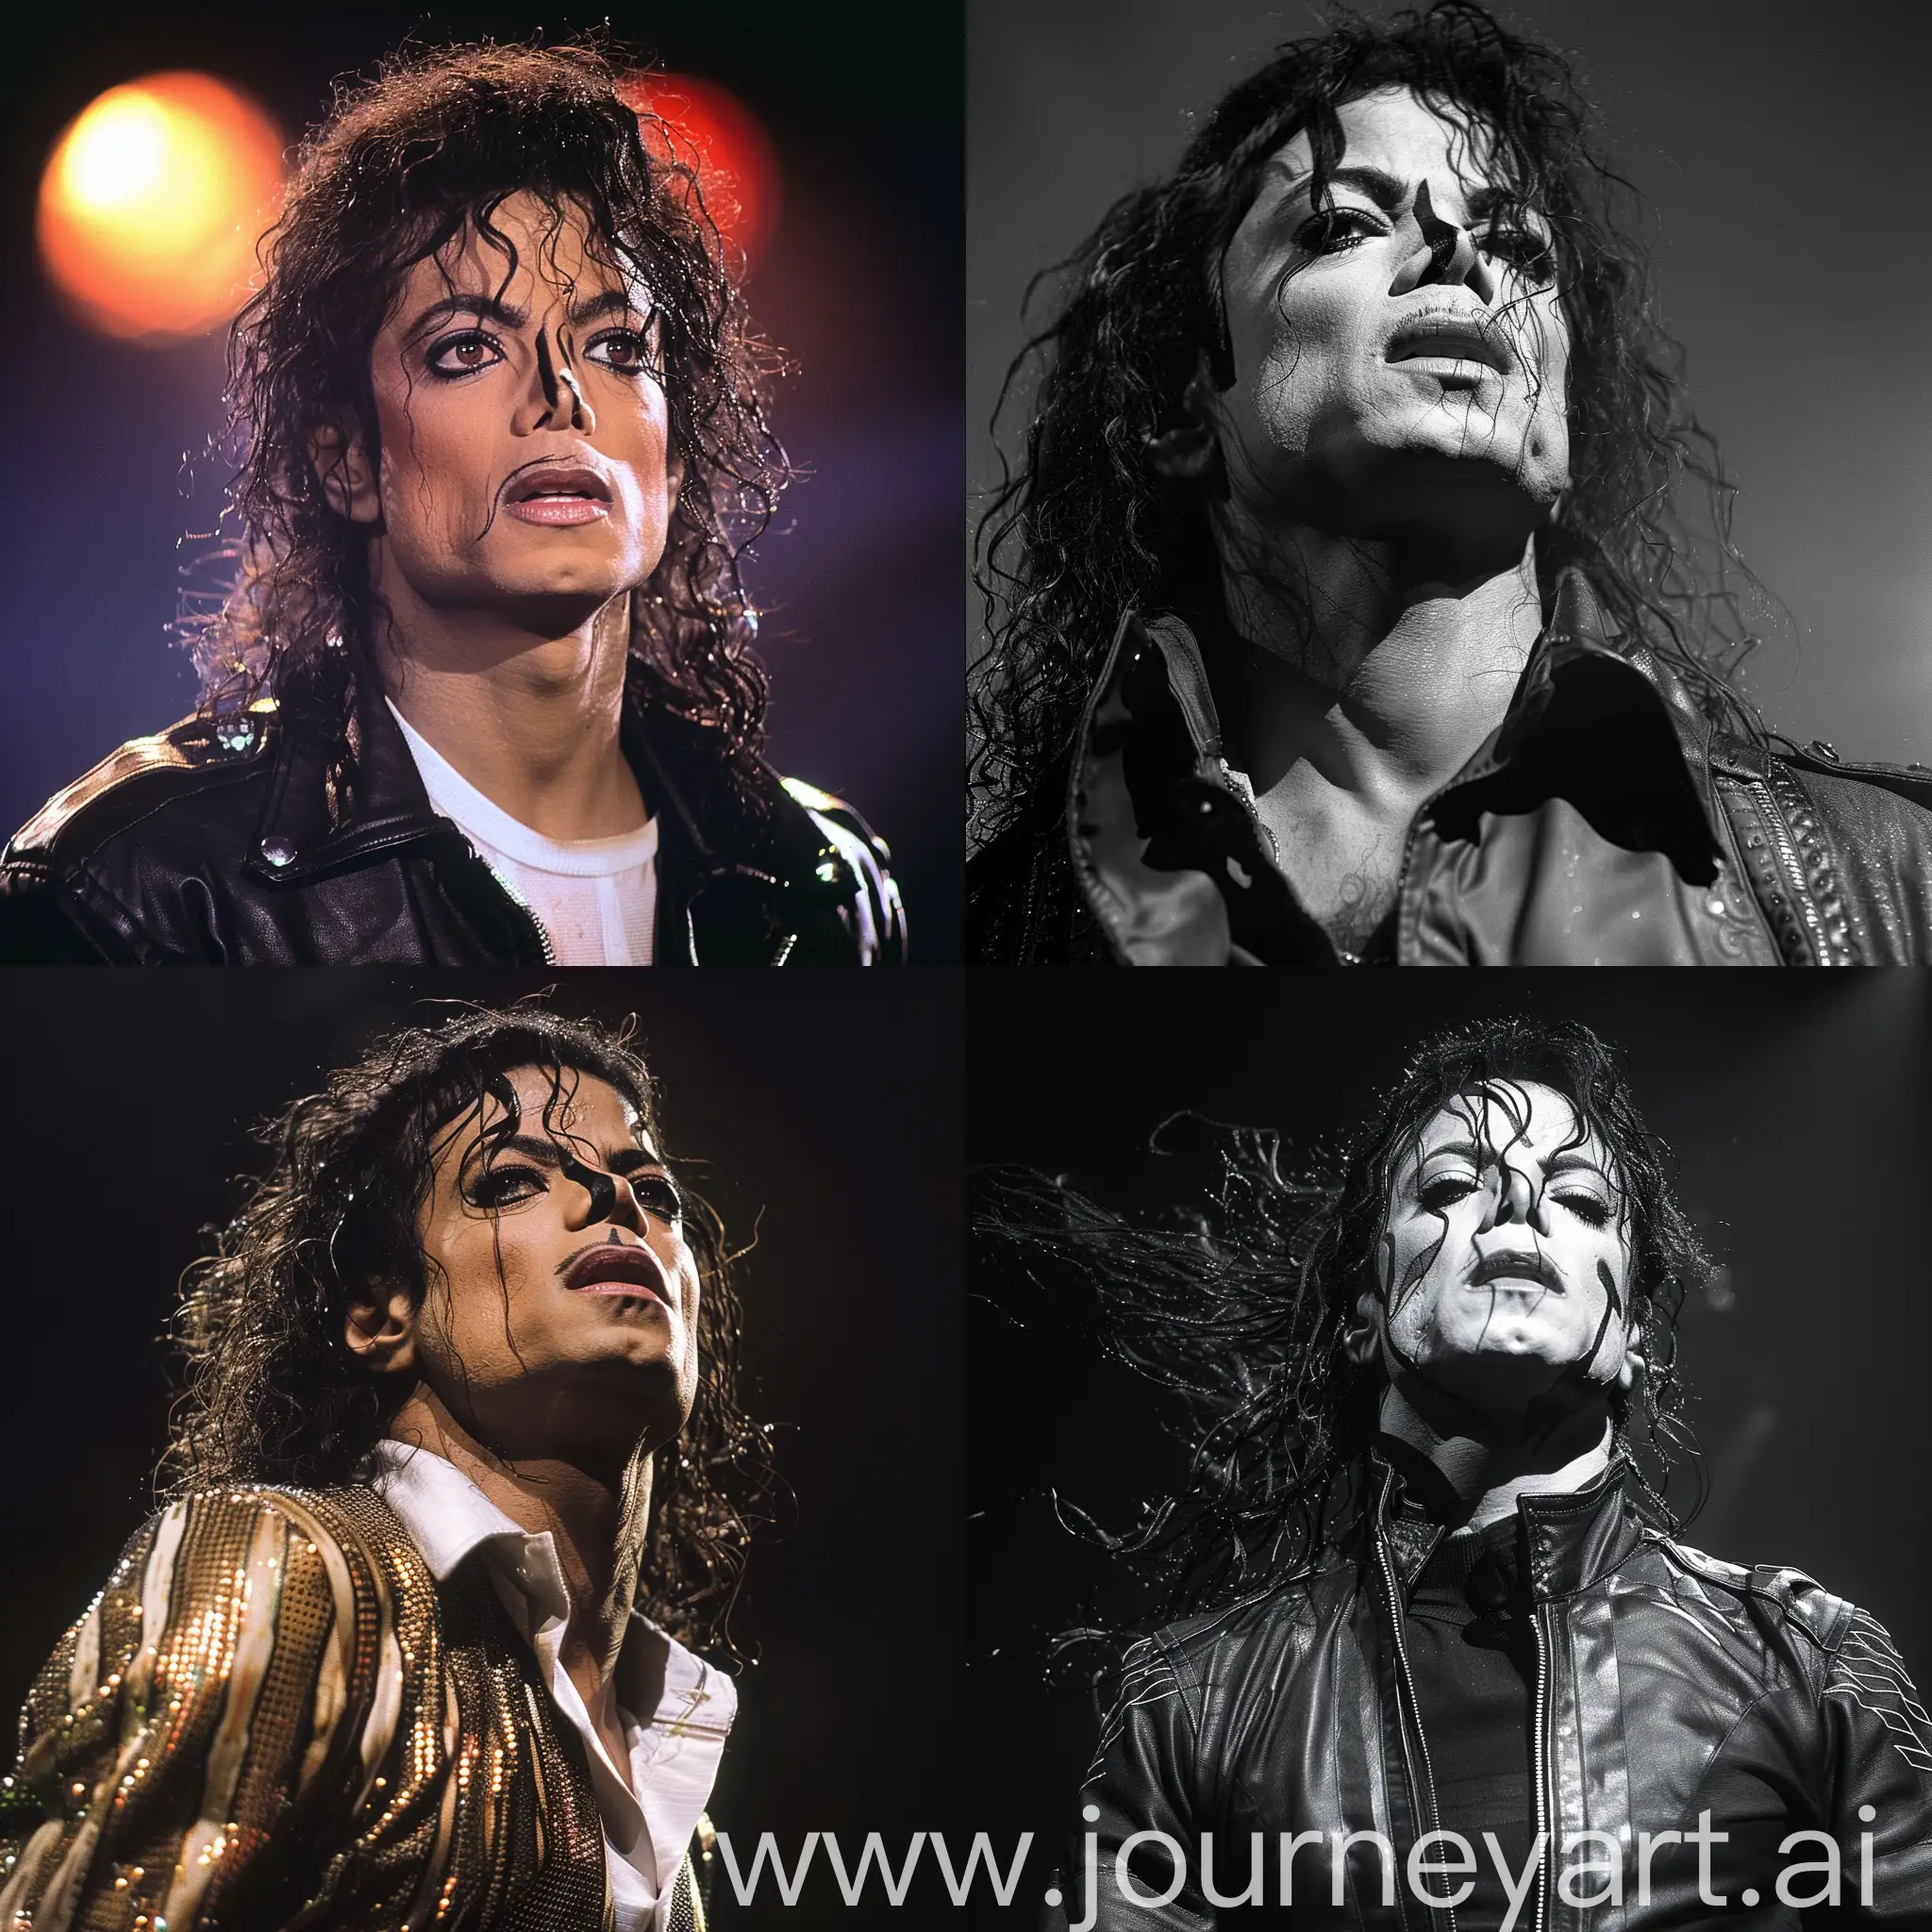 Michael-Jackson-Portrait-in-Vibrant-Colors